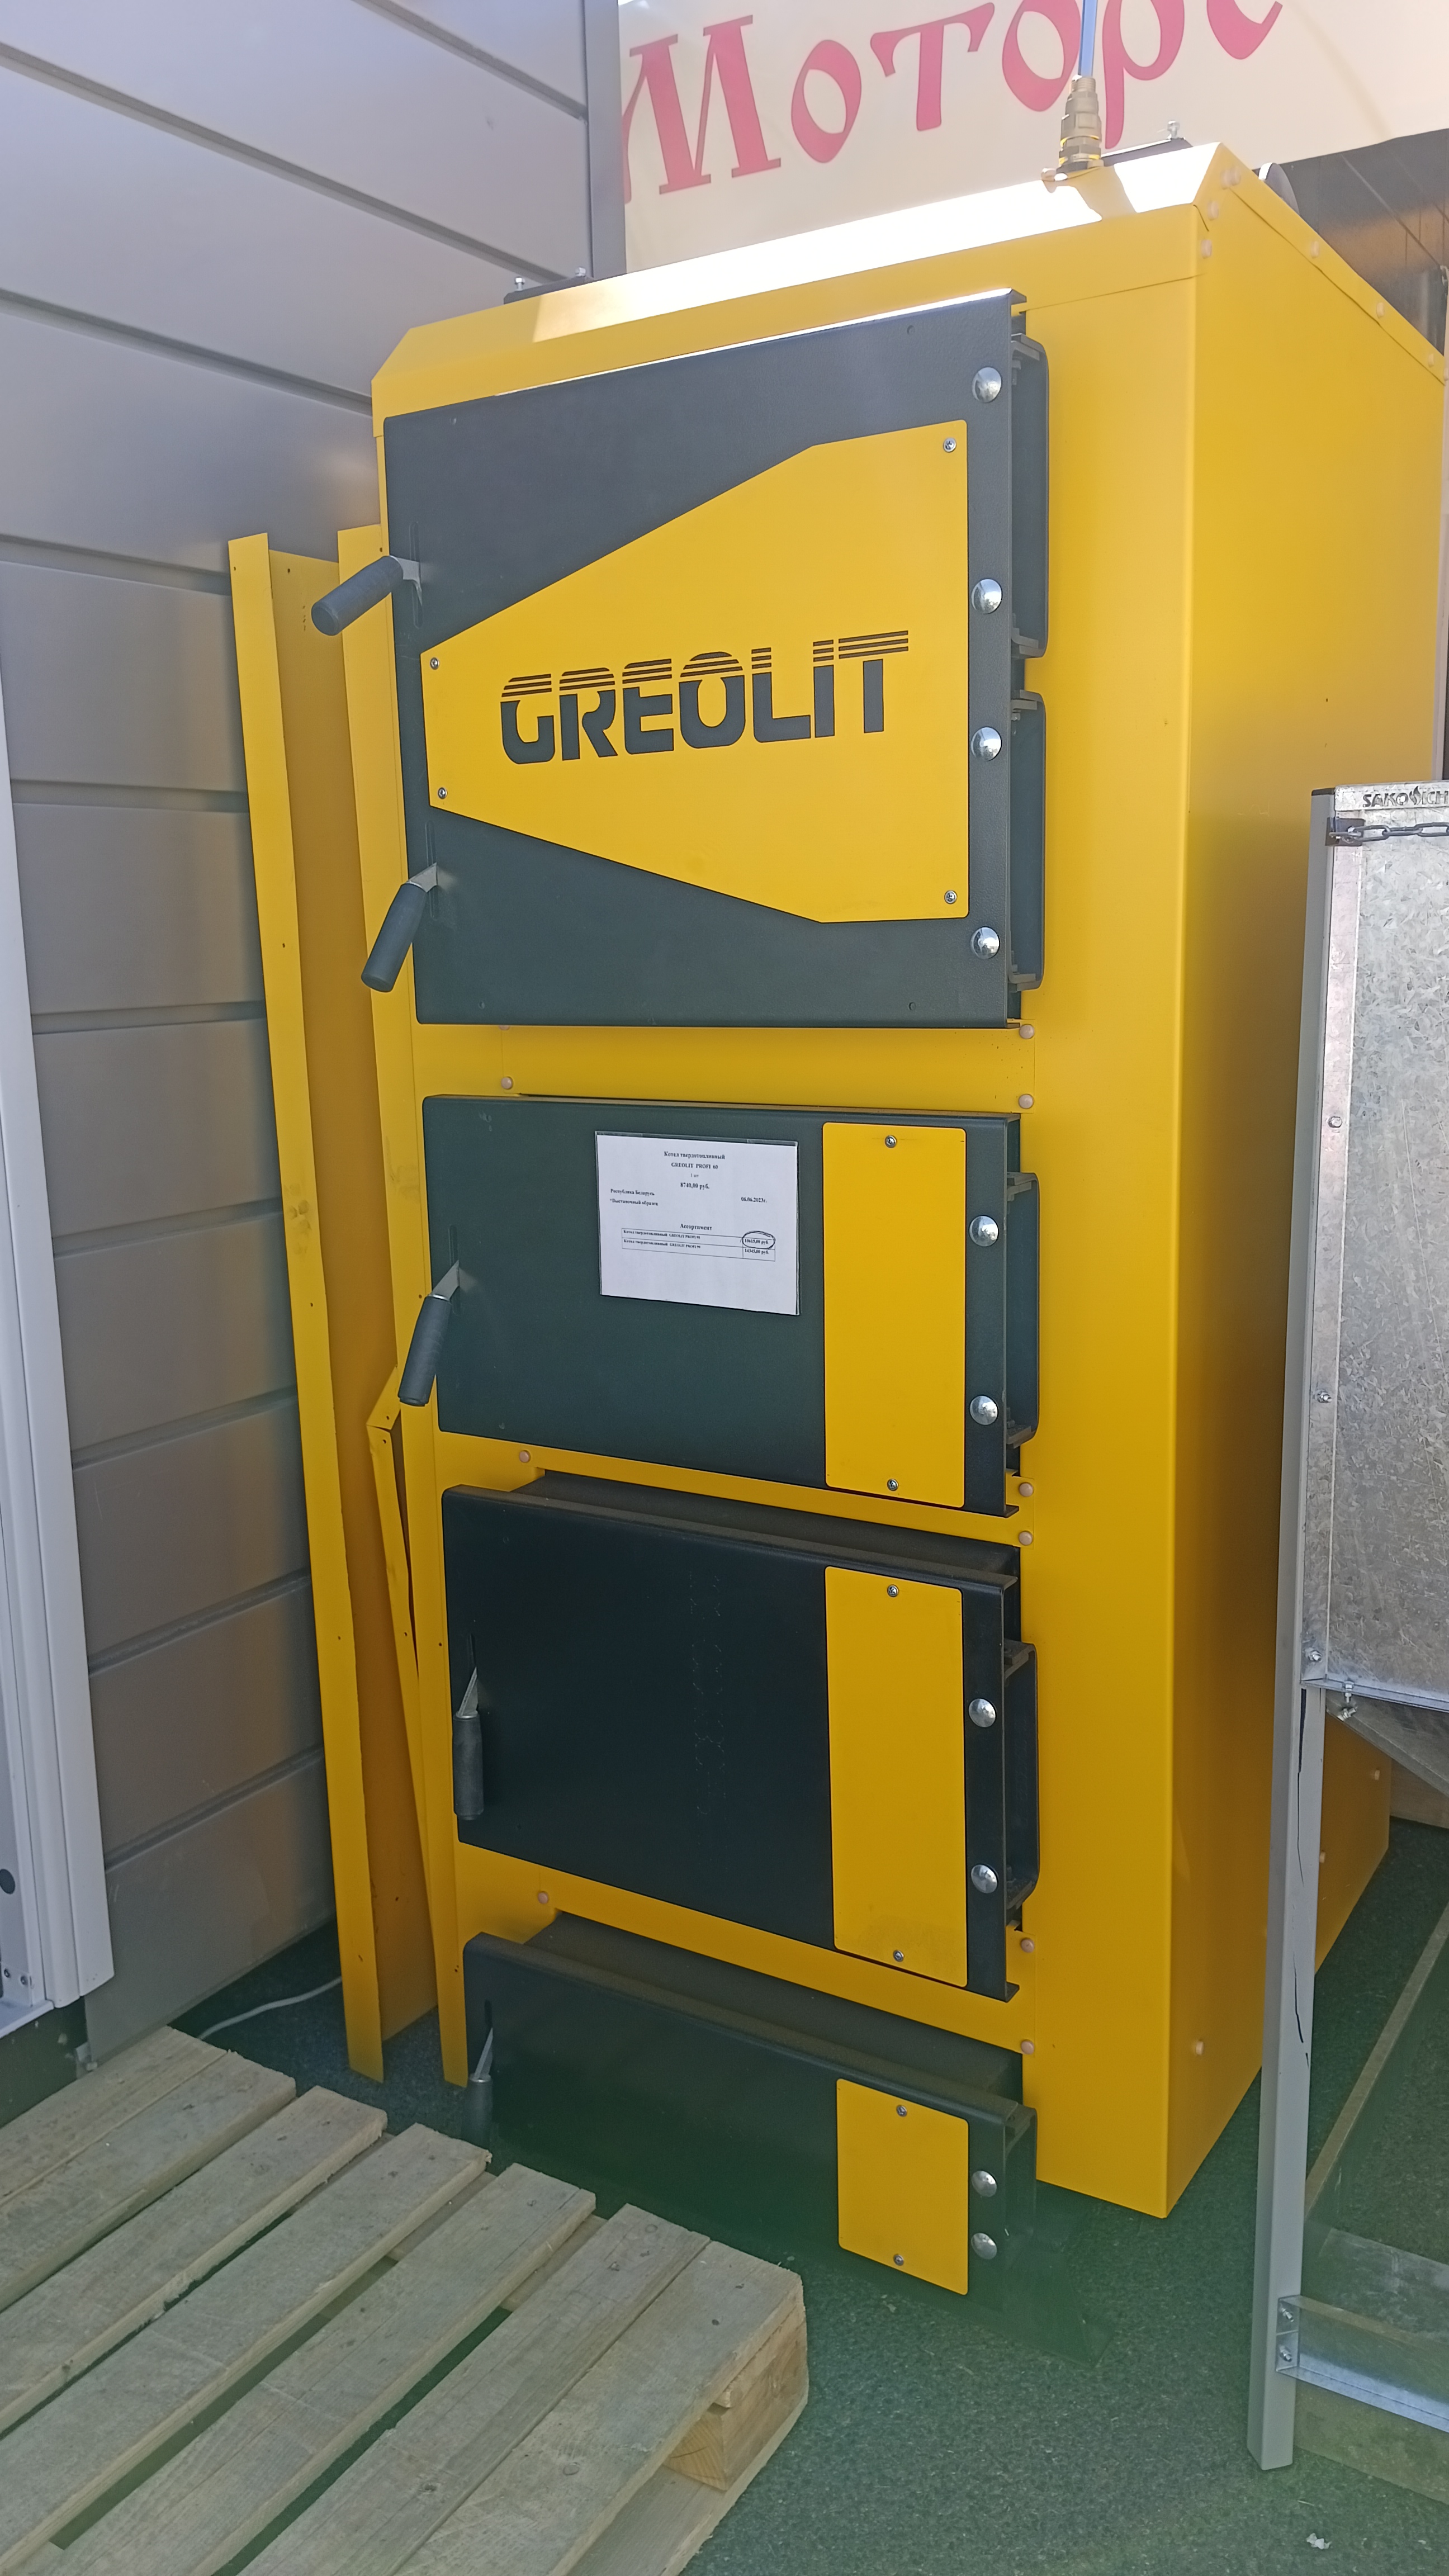 Твердотопливные котлы Greolit произвели фурор на выставке Белагро .  Оборудование: Твердотопливный котел Greolit PROFI (95 кВт);Твердотопливный котел Greolit PROFI (60 кВт);